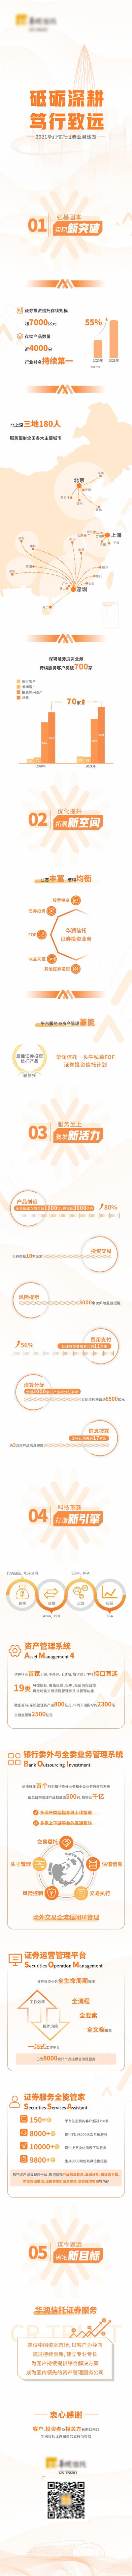 南门网 专题设计 长图 房地产 品牌 企业 年报 金融 橙色 简约 信息图表